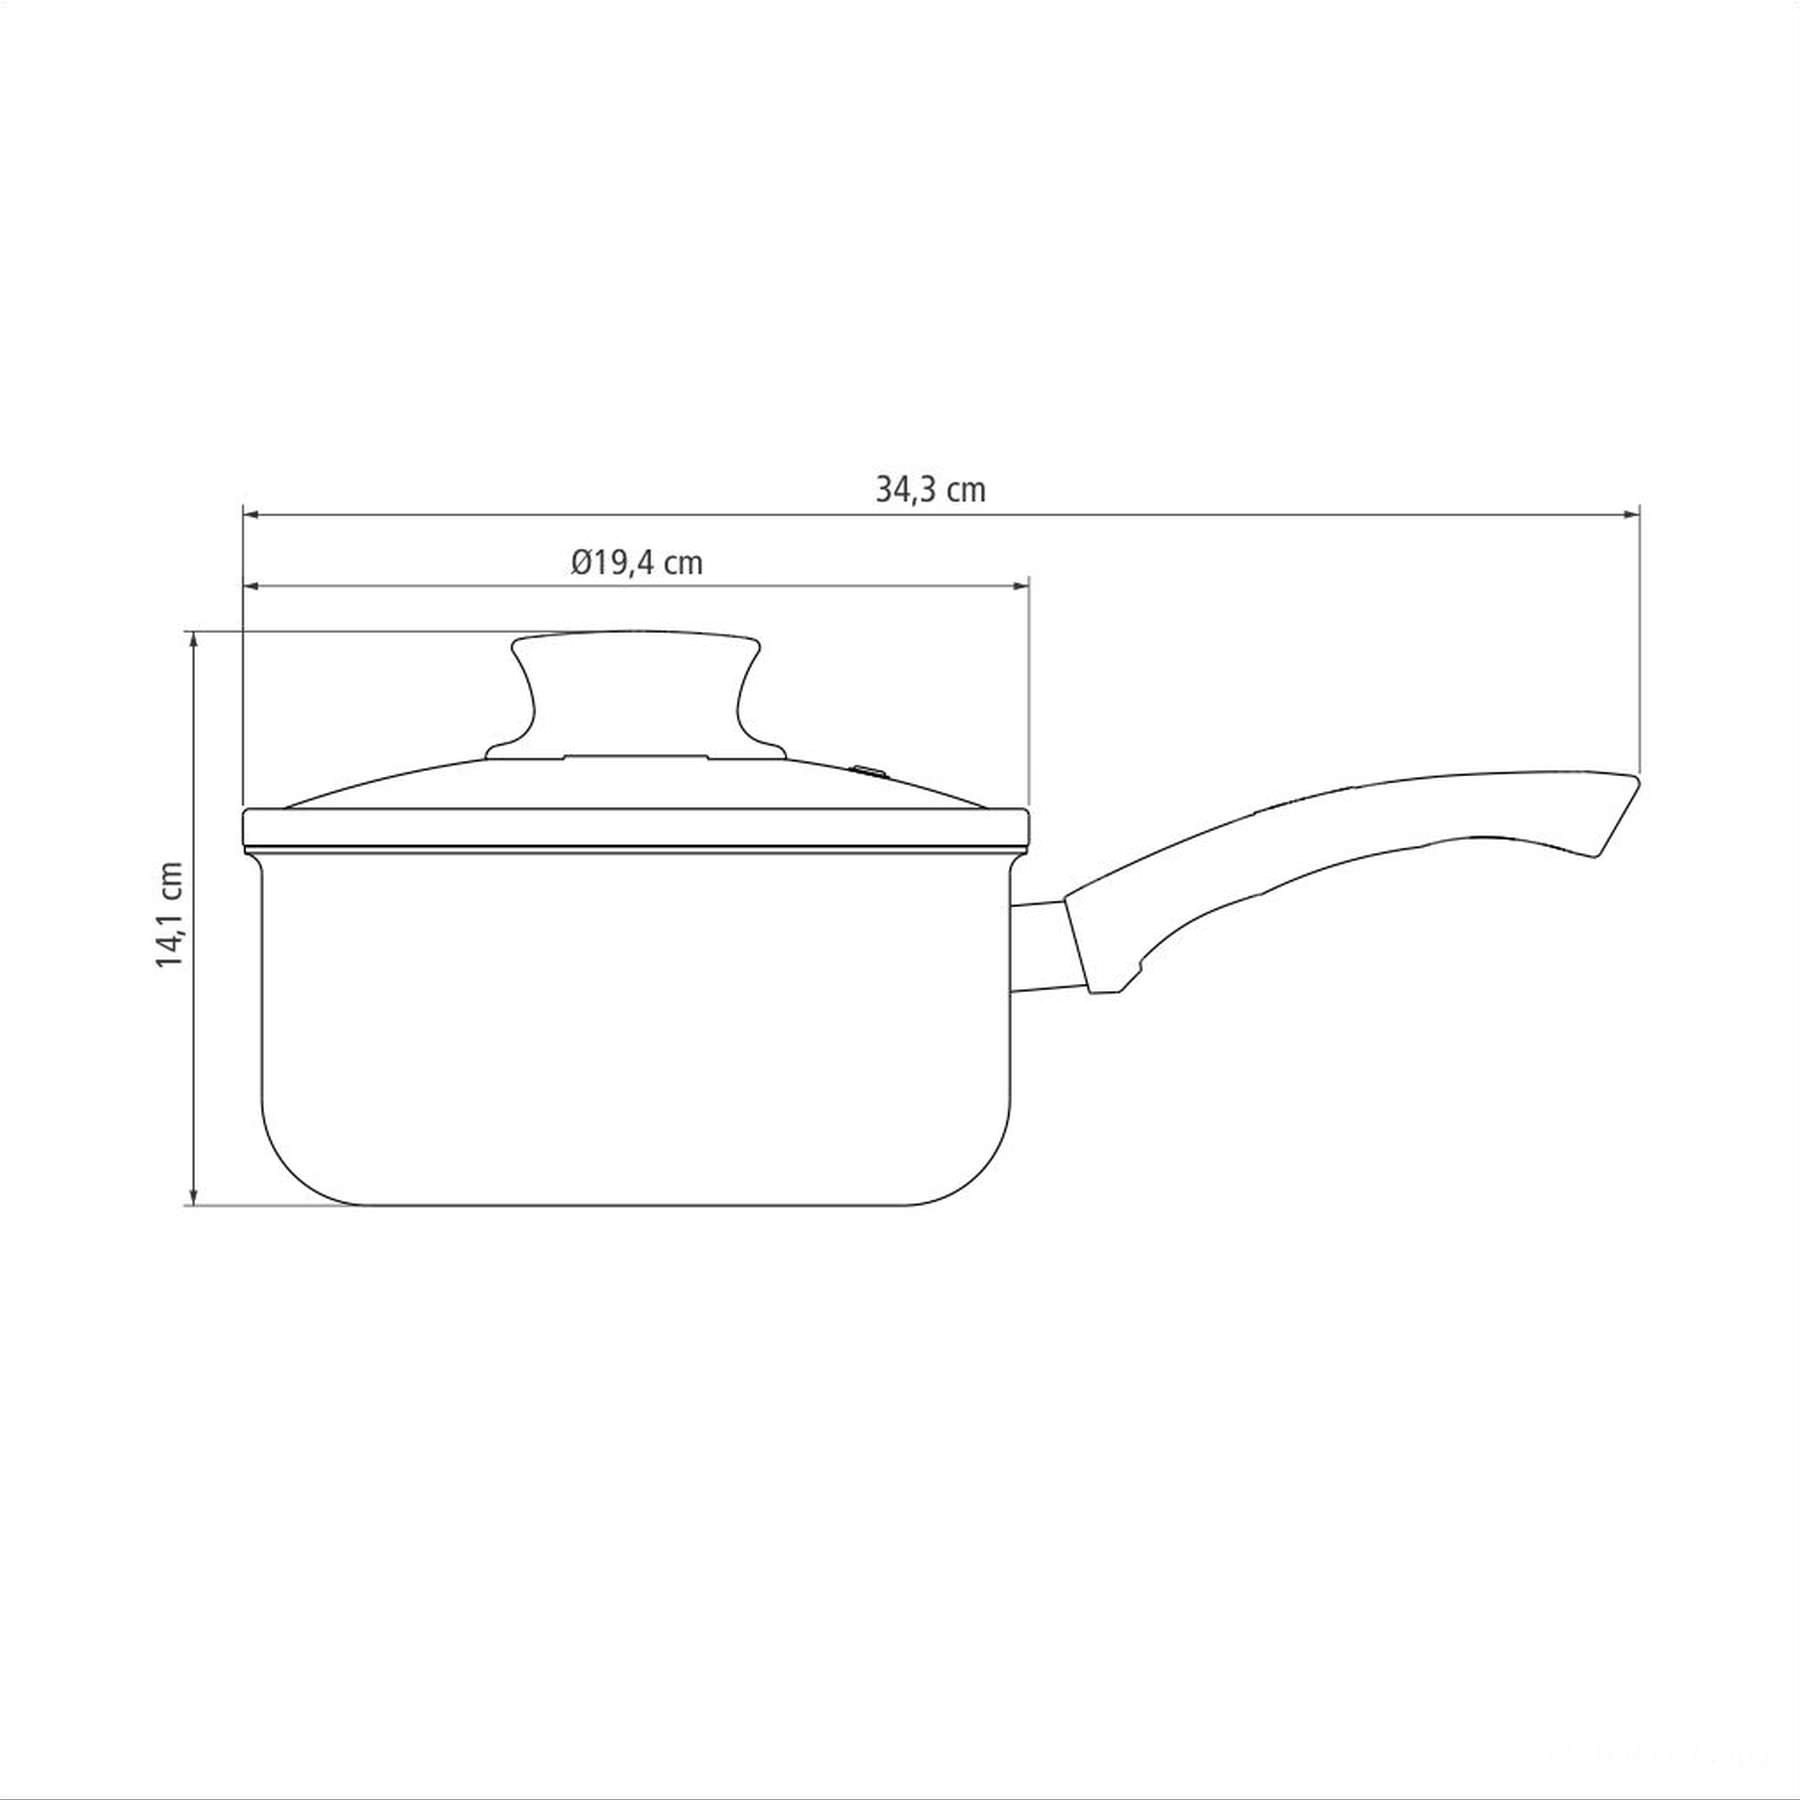 Panela Paris Antiaderente Starflon Max Chumbo com Tampa de Vidro 18 cm 2,1 L